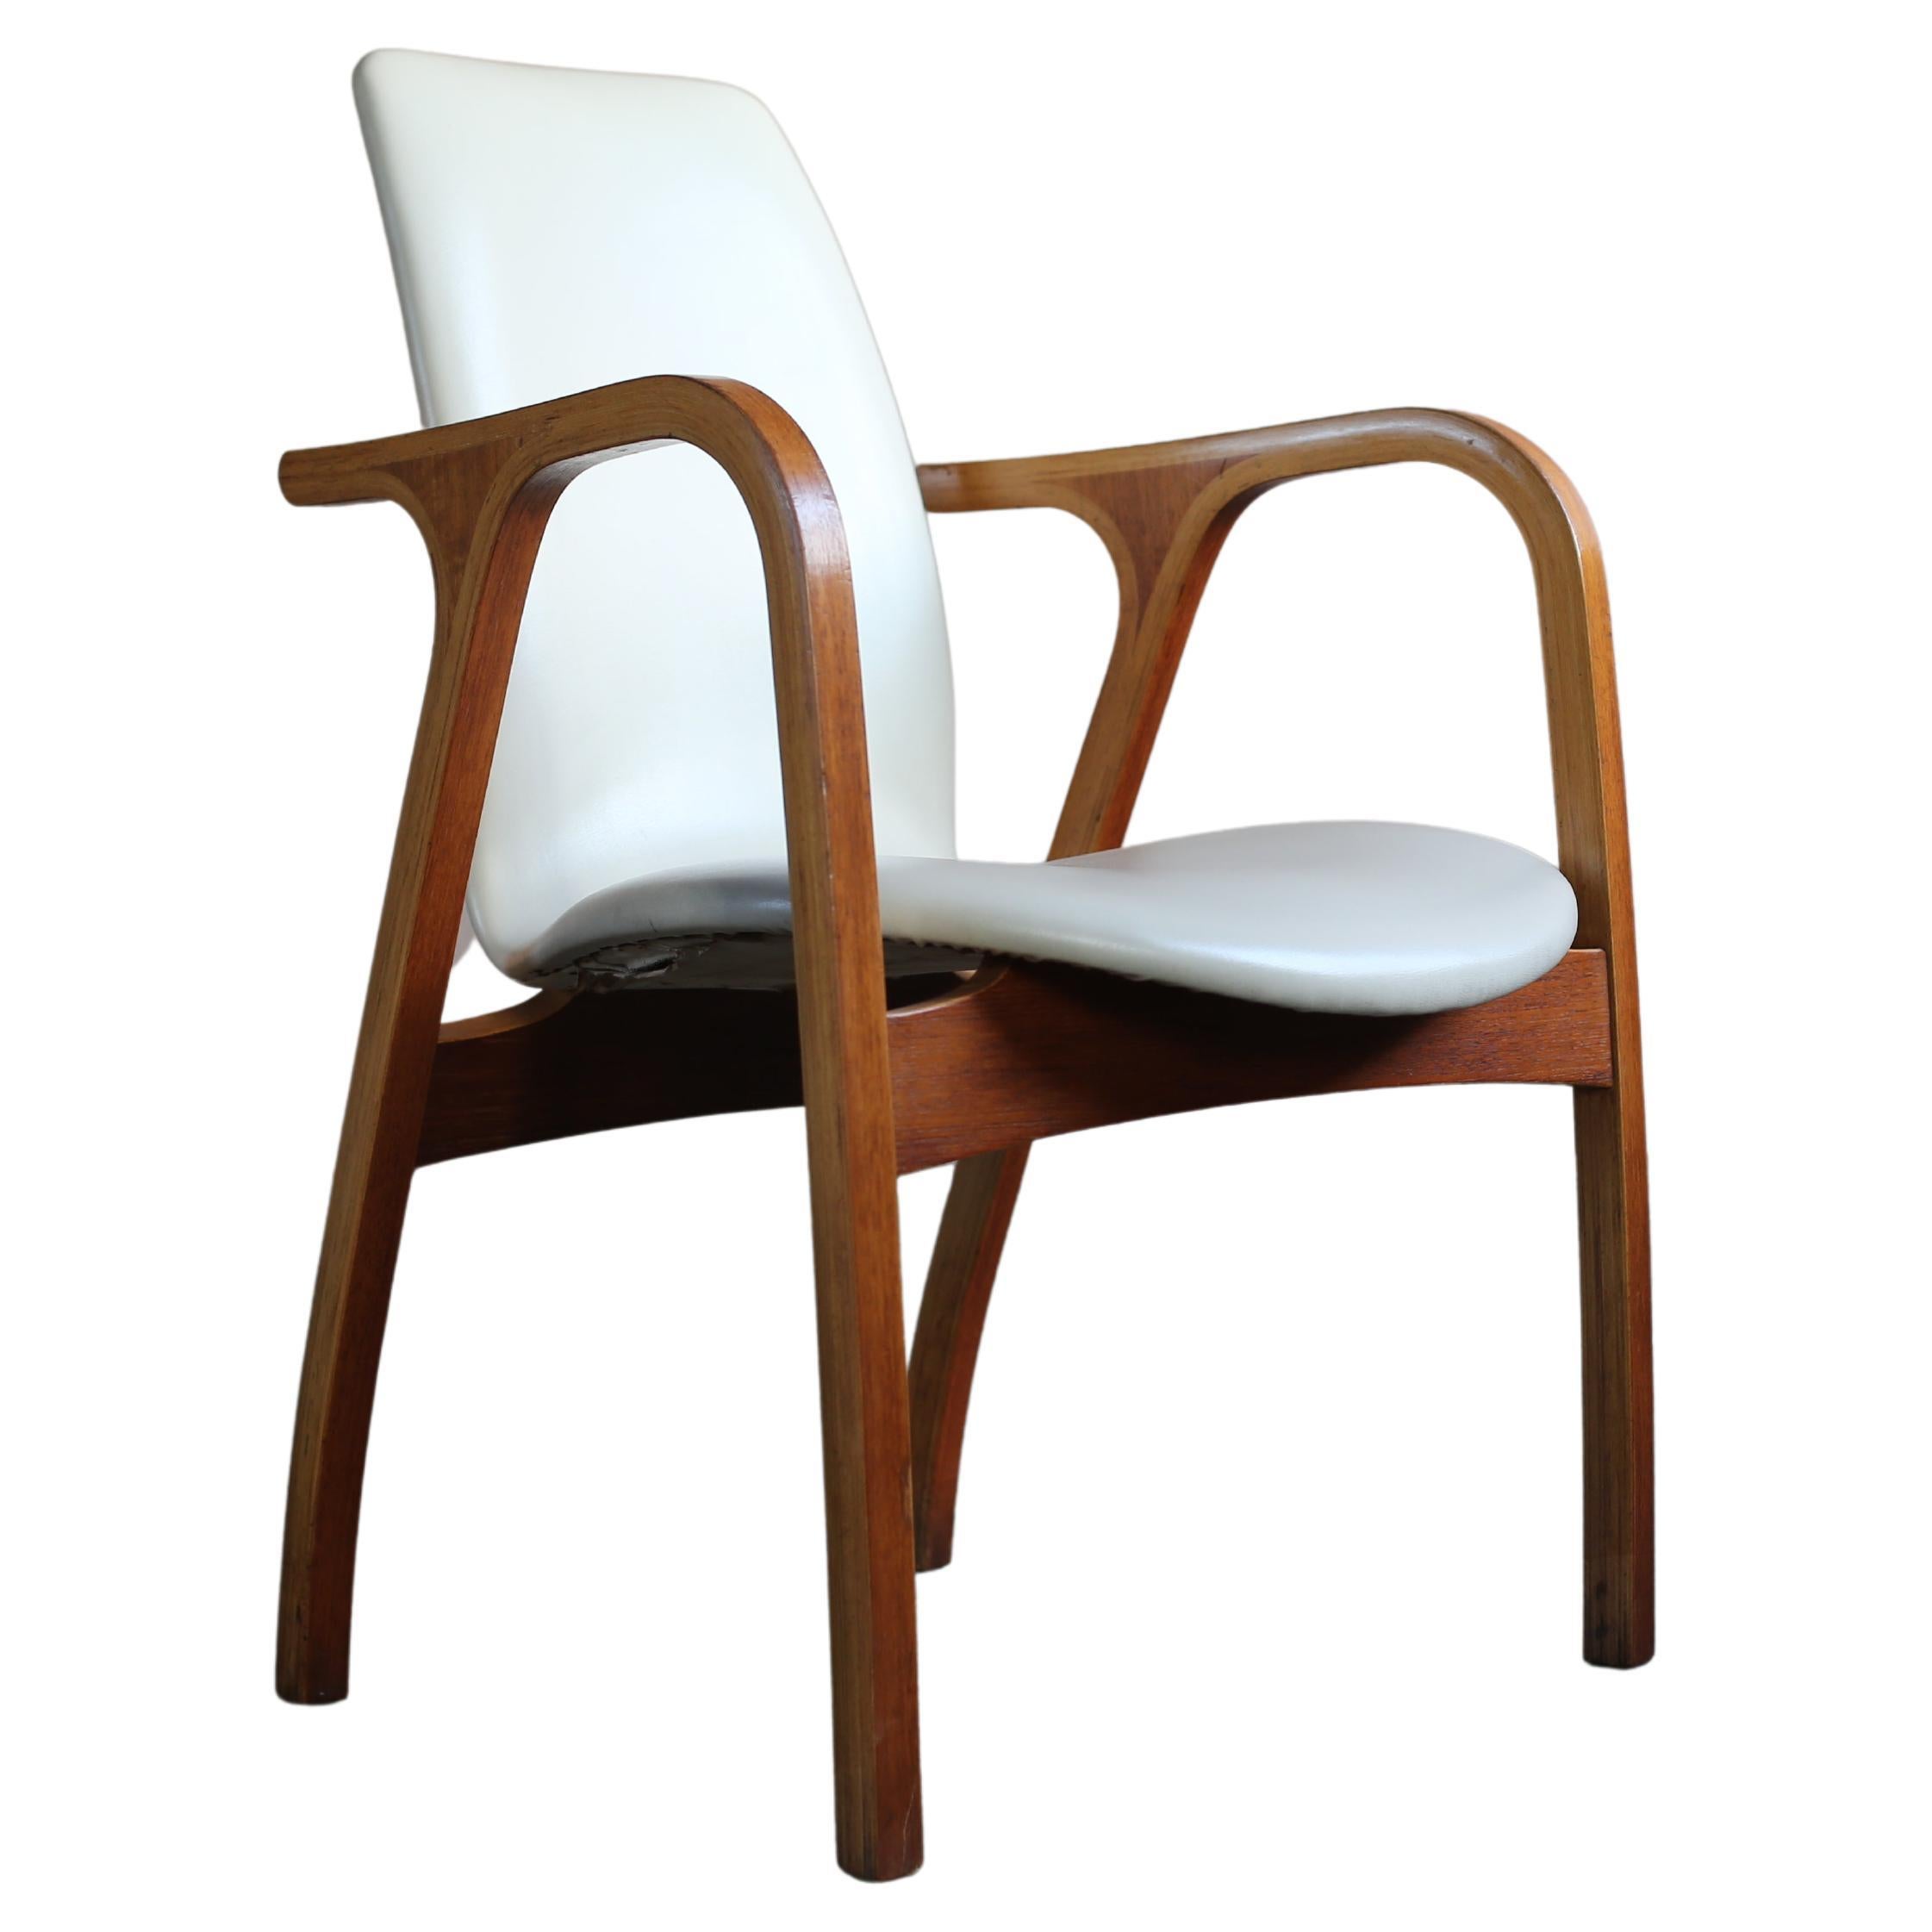 Antler Chair designed by Junzo Sakakura Architectural Office for Tendo Mokko For Sale